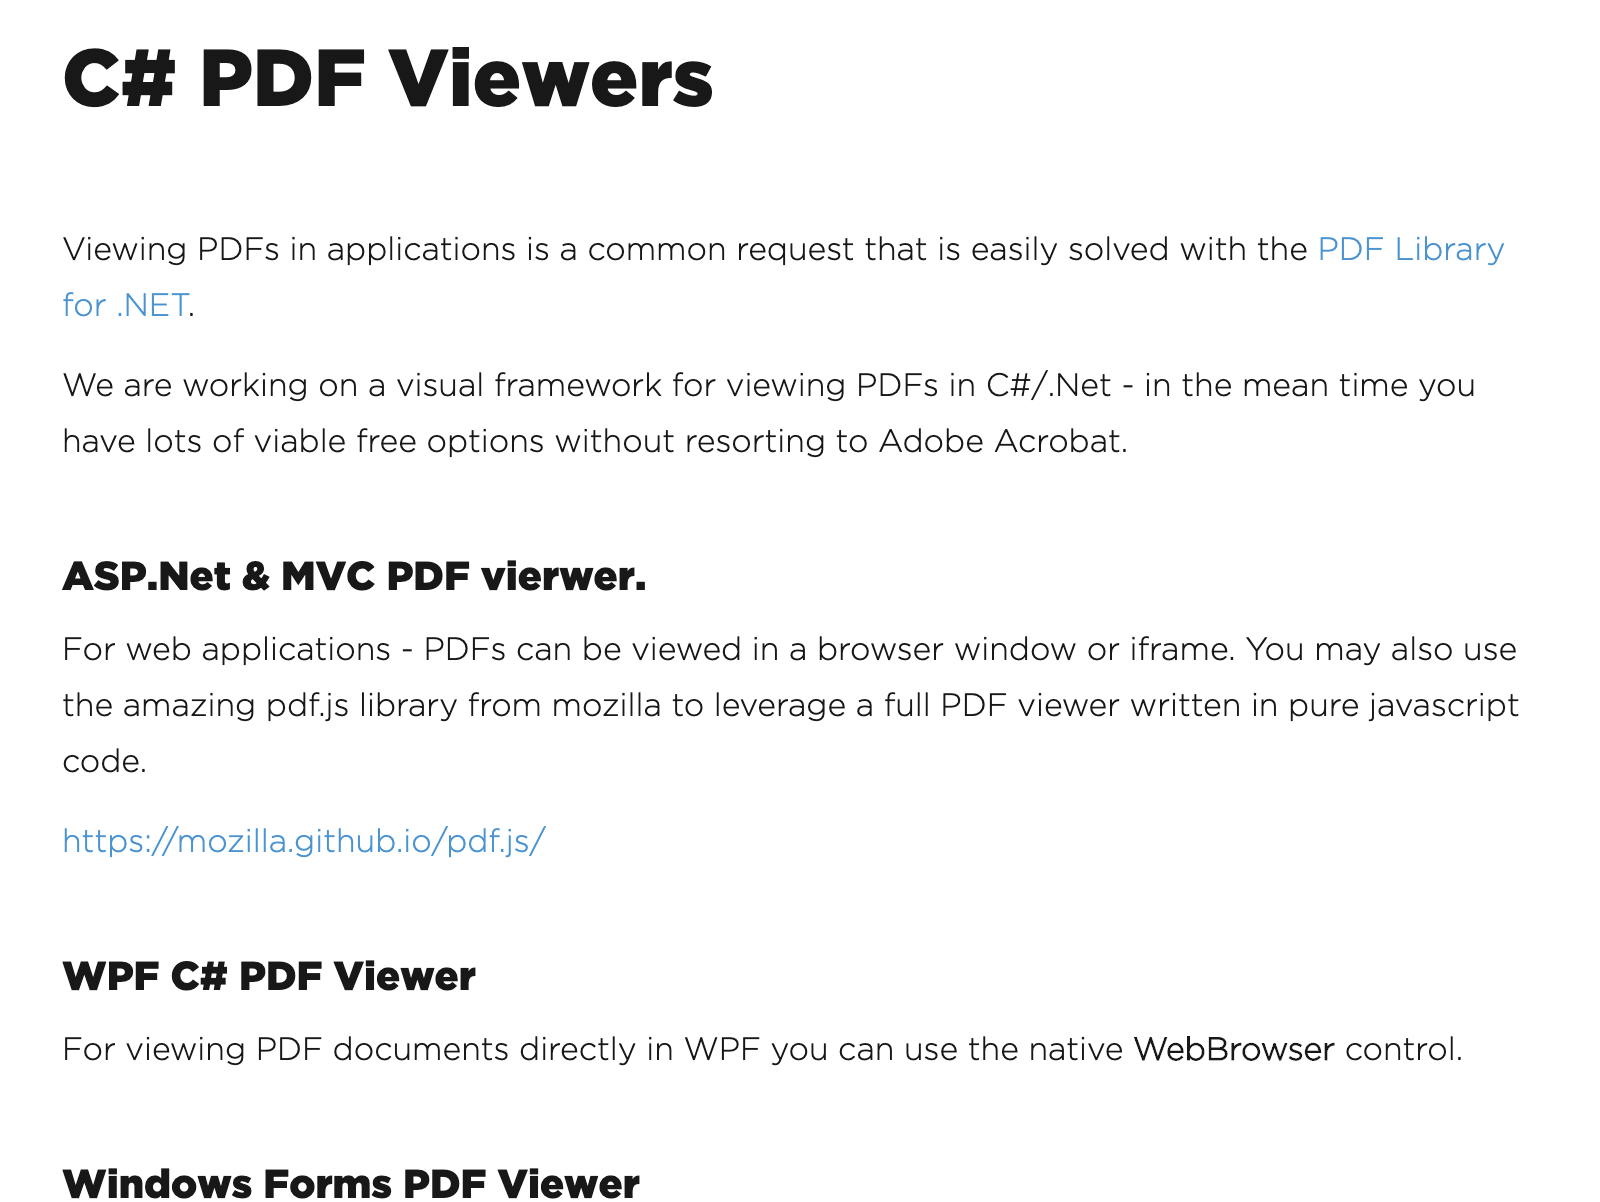 C# PDF Viewer software